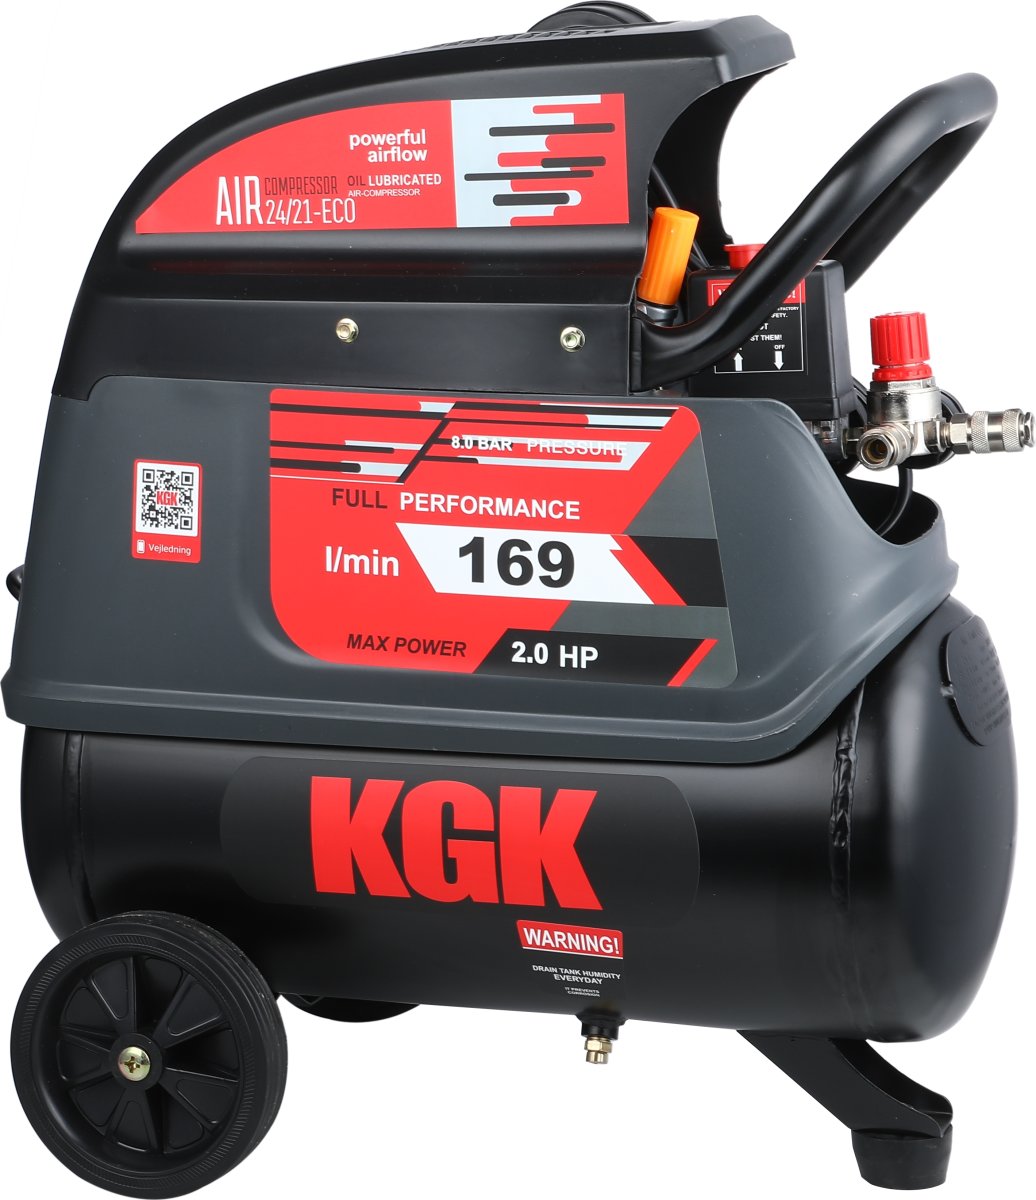 KGK 24/21 ECO kompressor